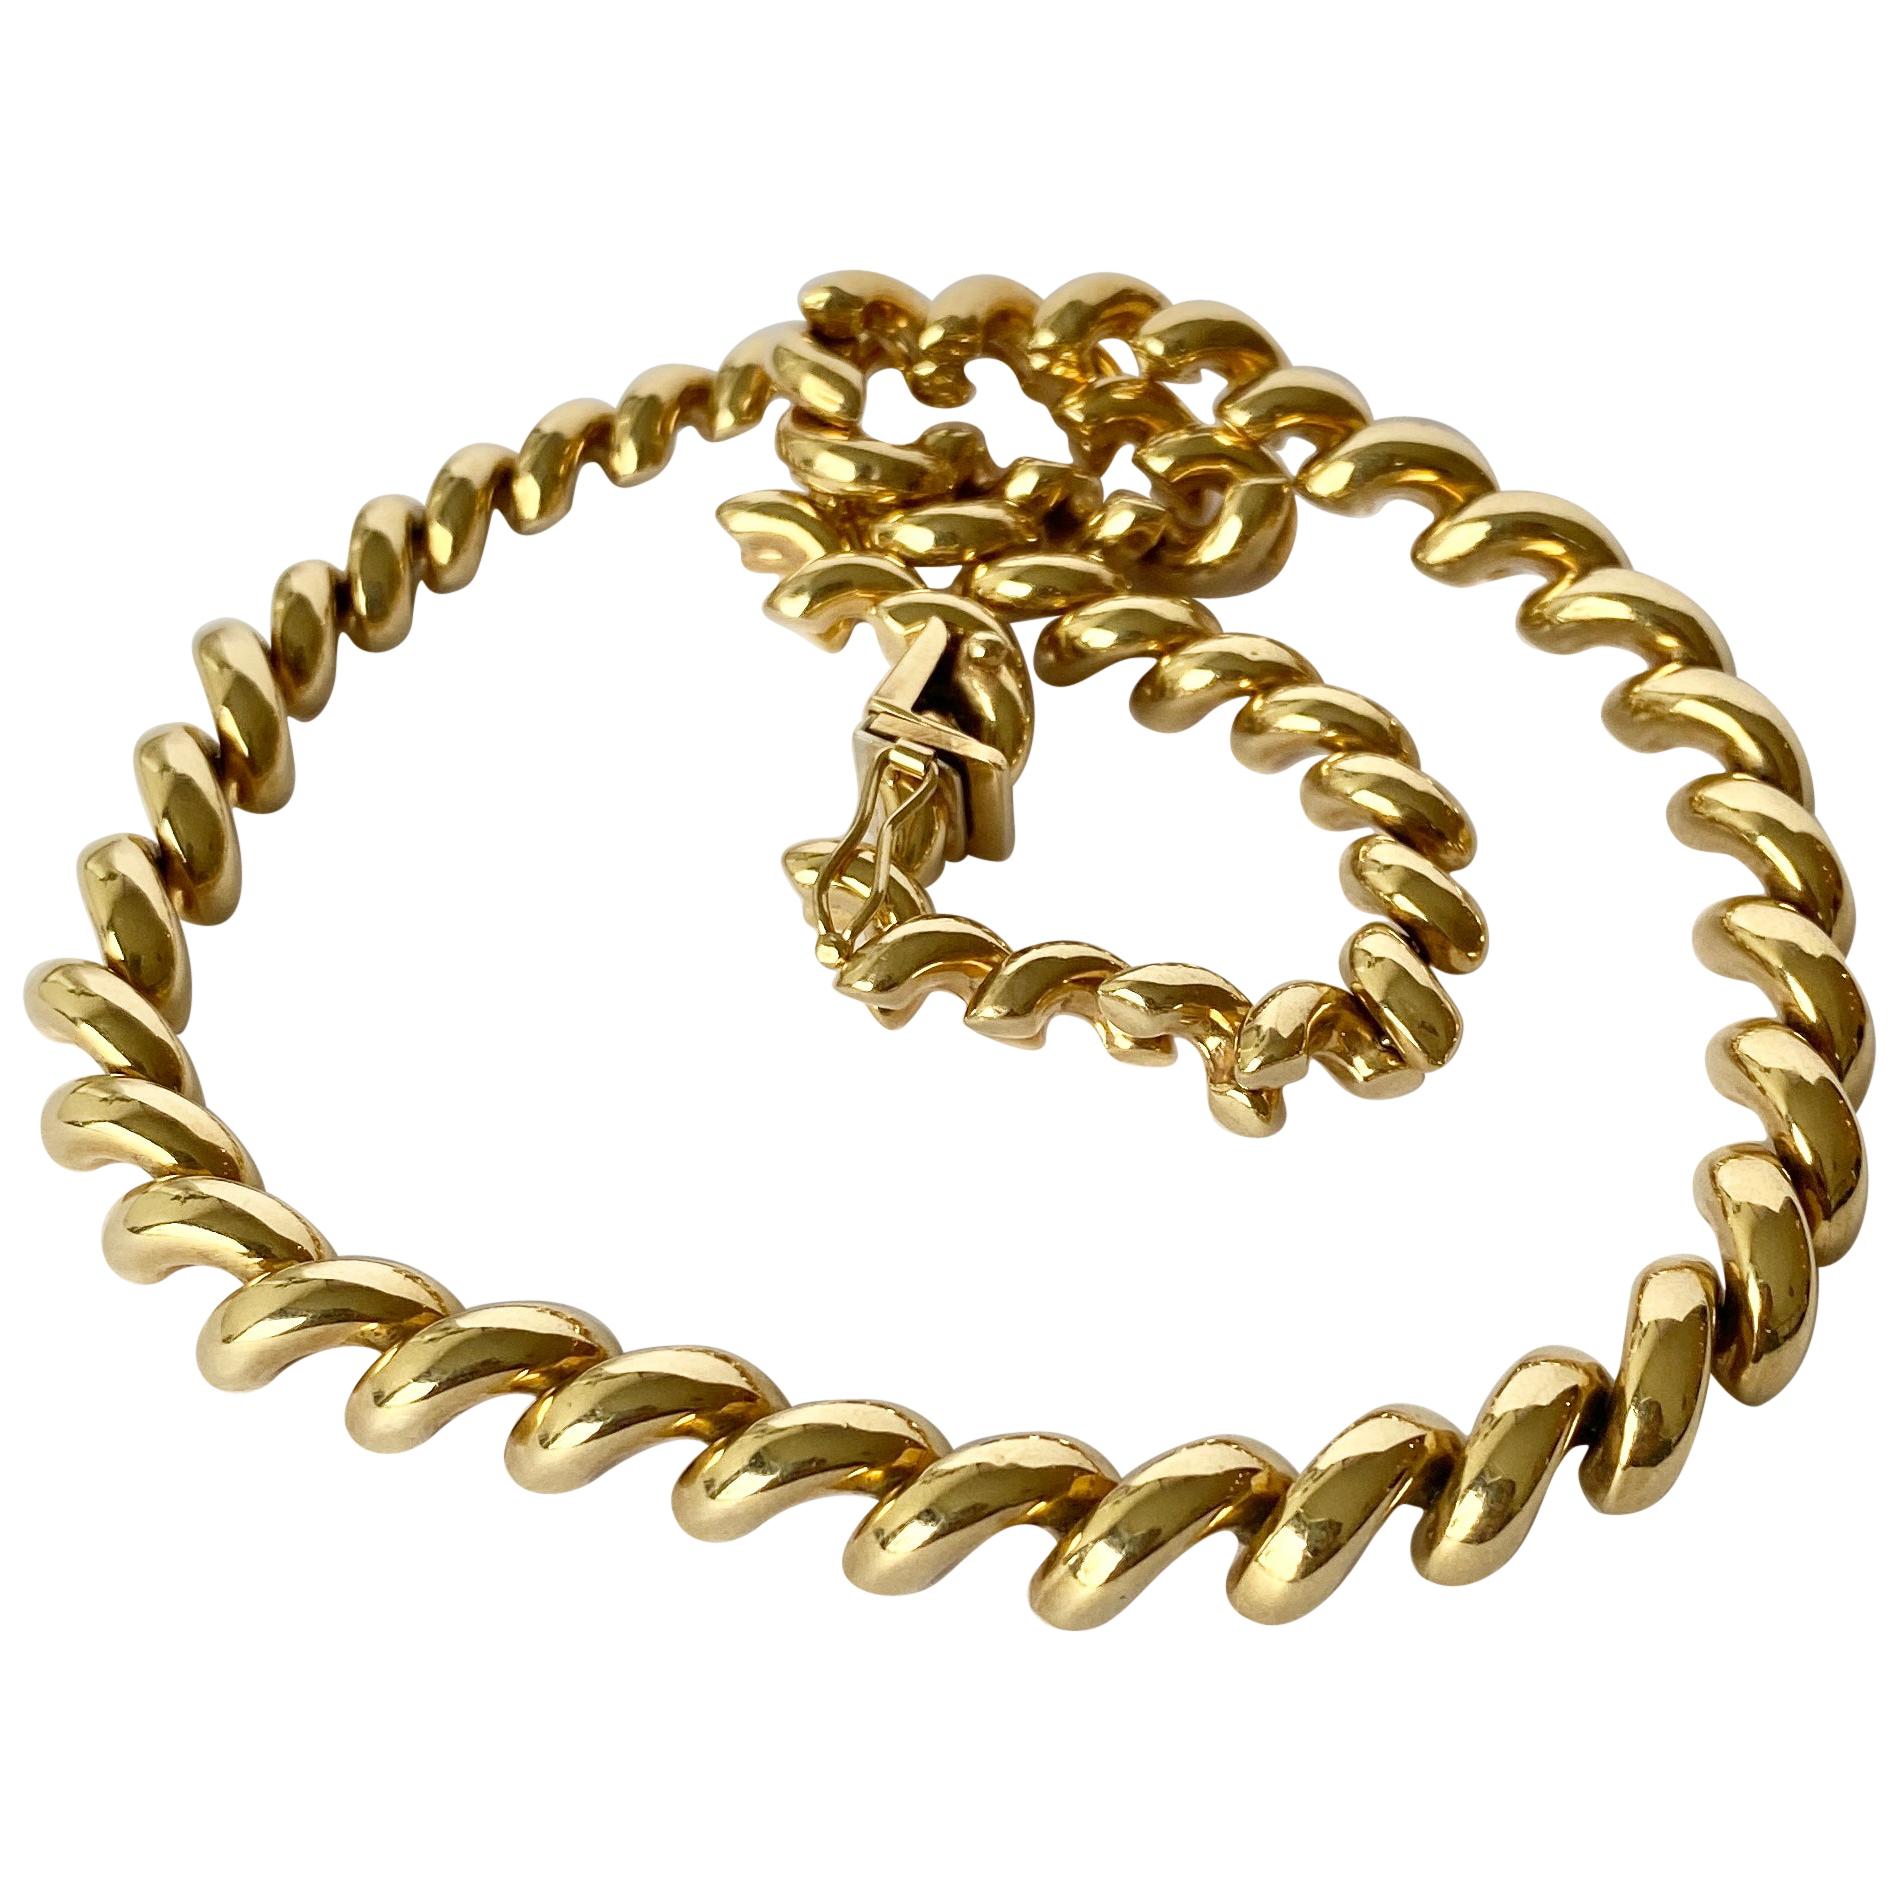 Vintage 9 Carat Gold Chain Necklace